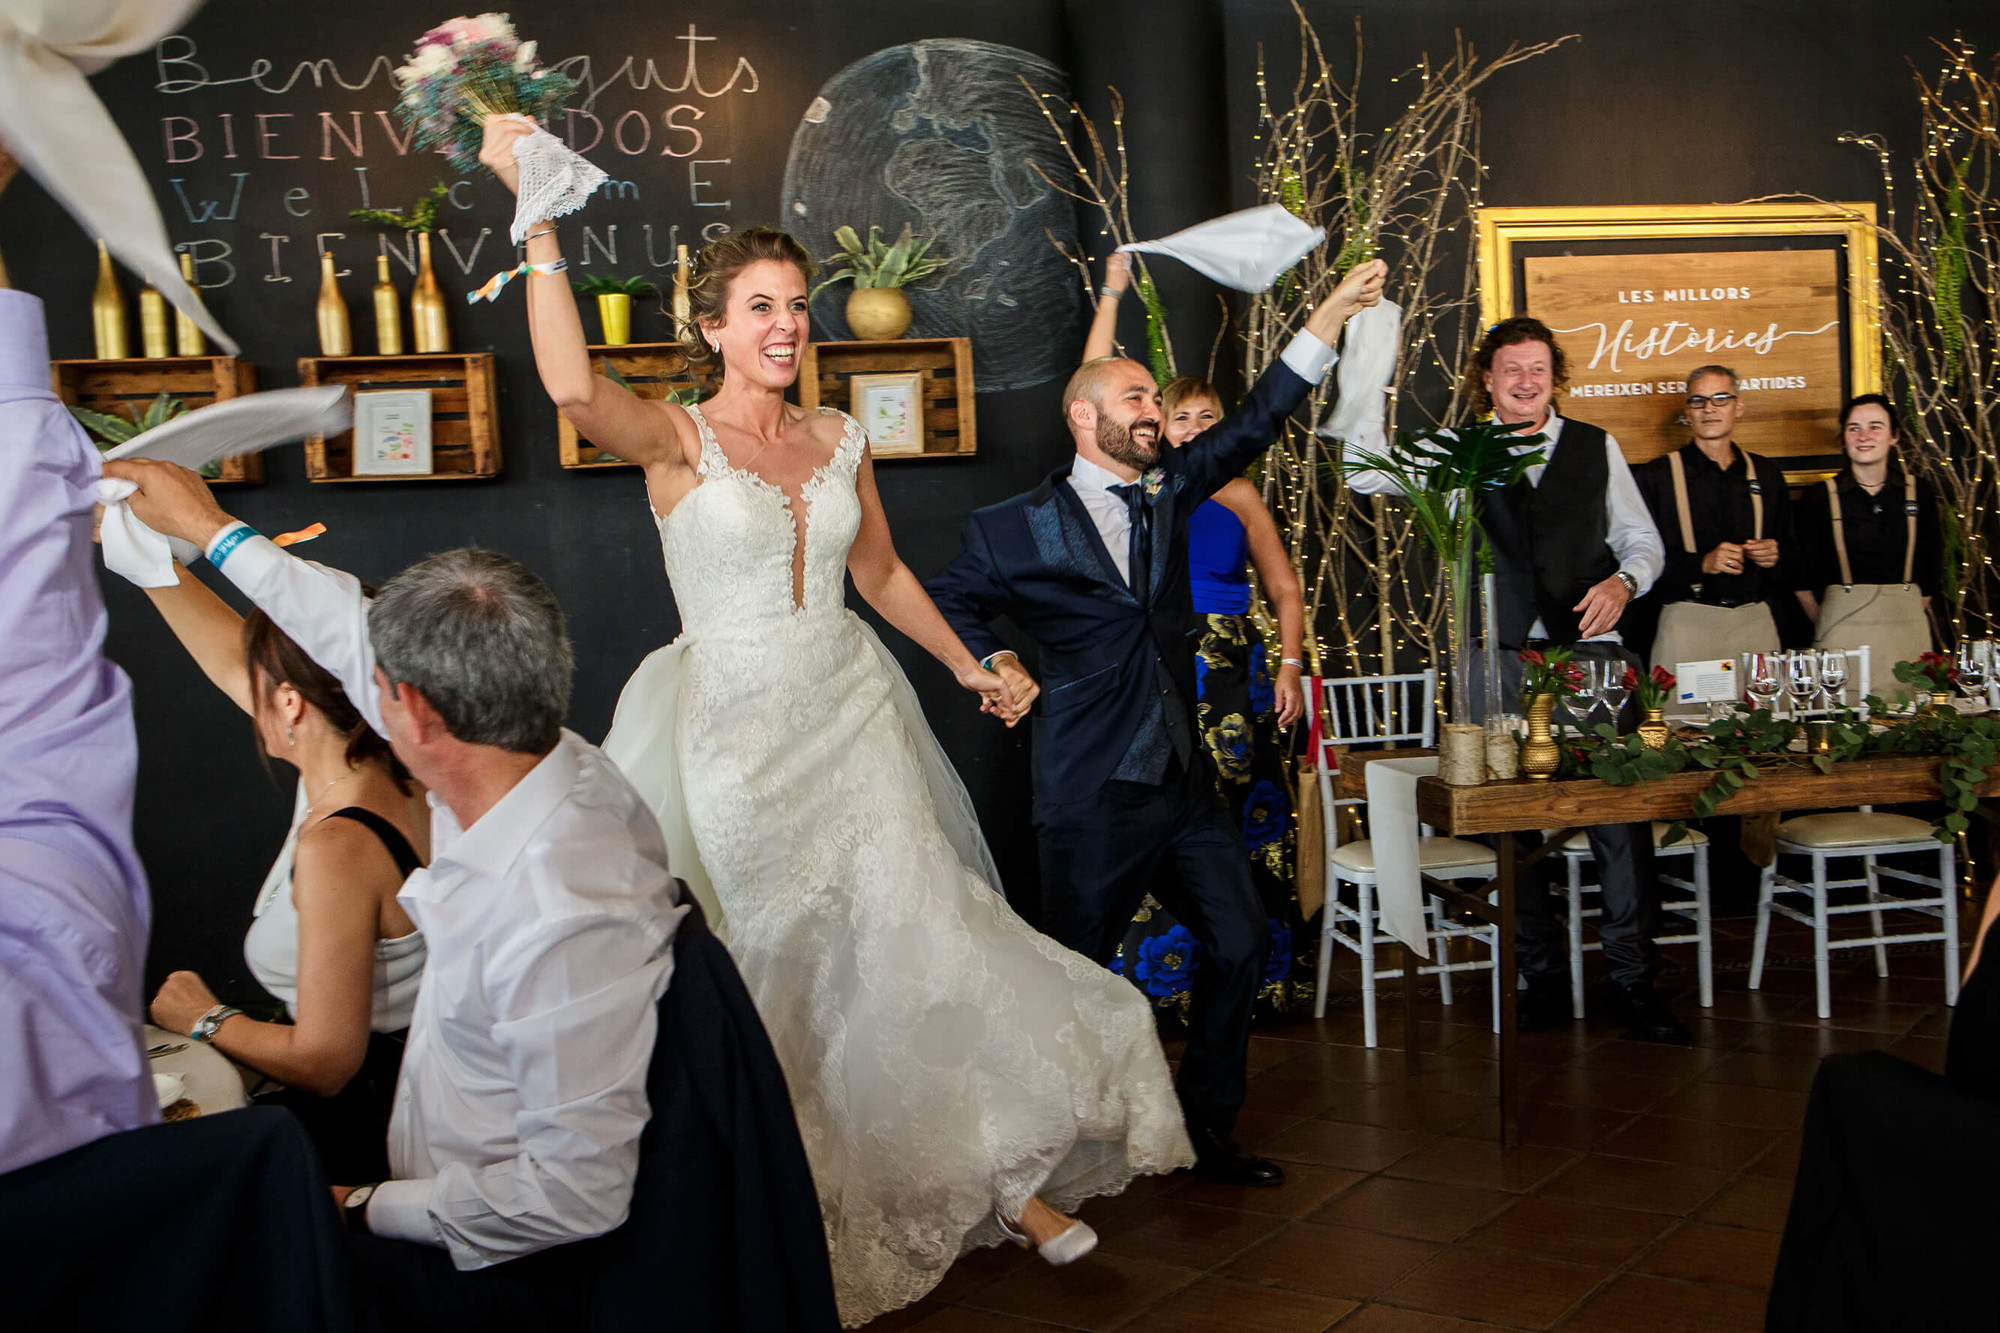 Entrada triunfal dels nuvis al menjador a la boda a Masia Torreblanca.